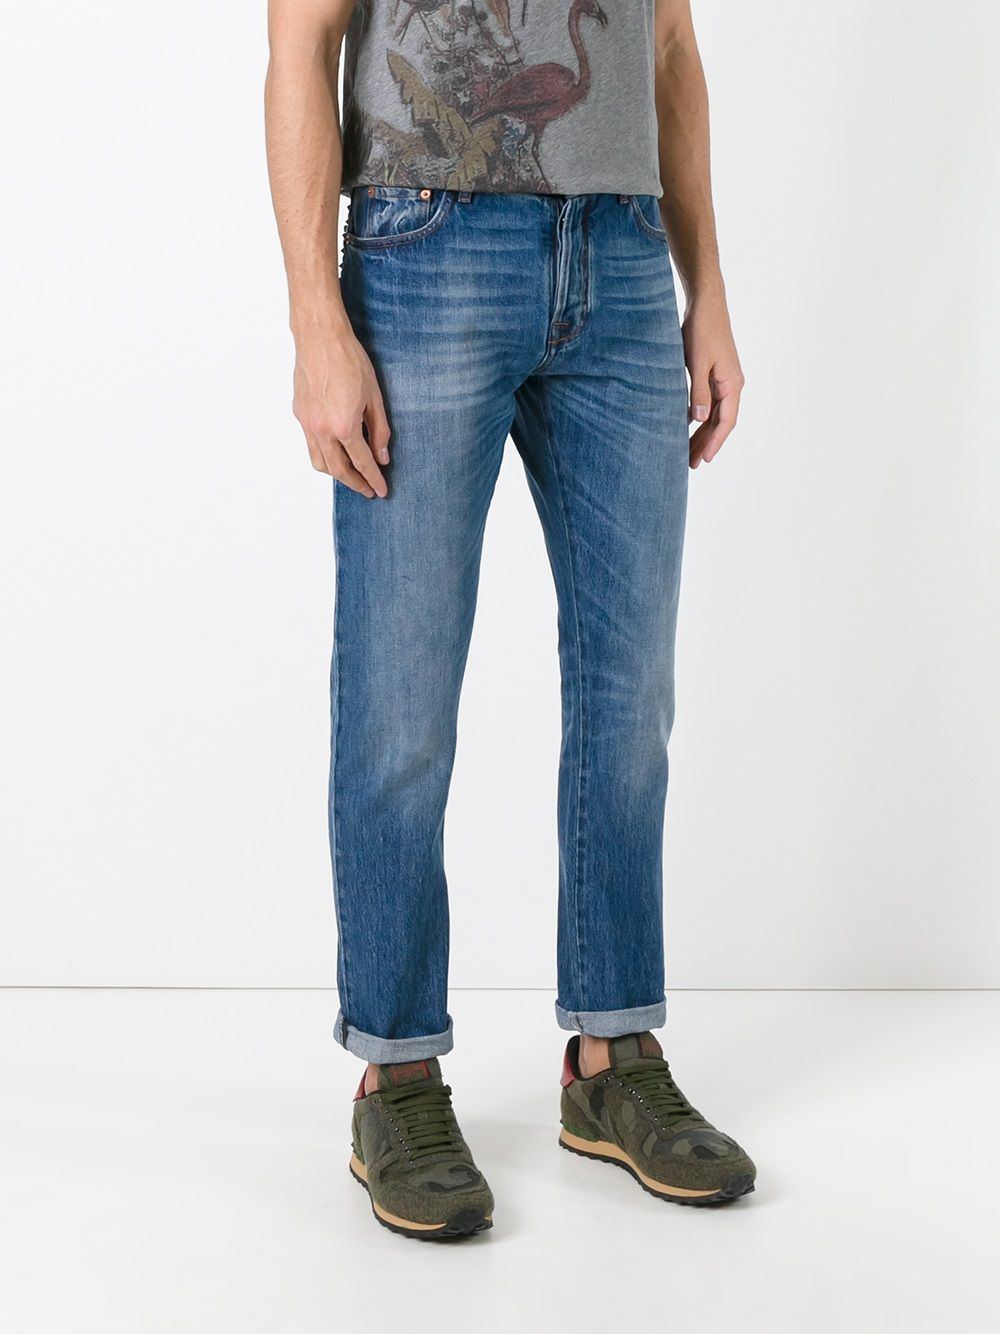 фото Valentino декорированные джинсы